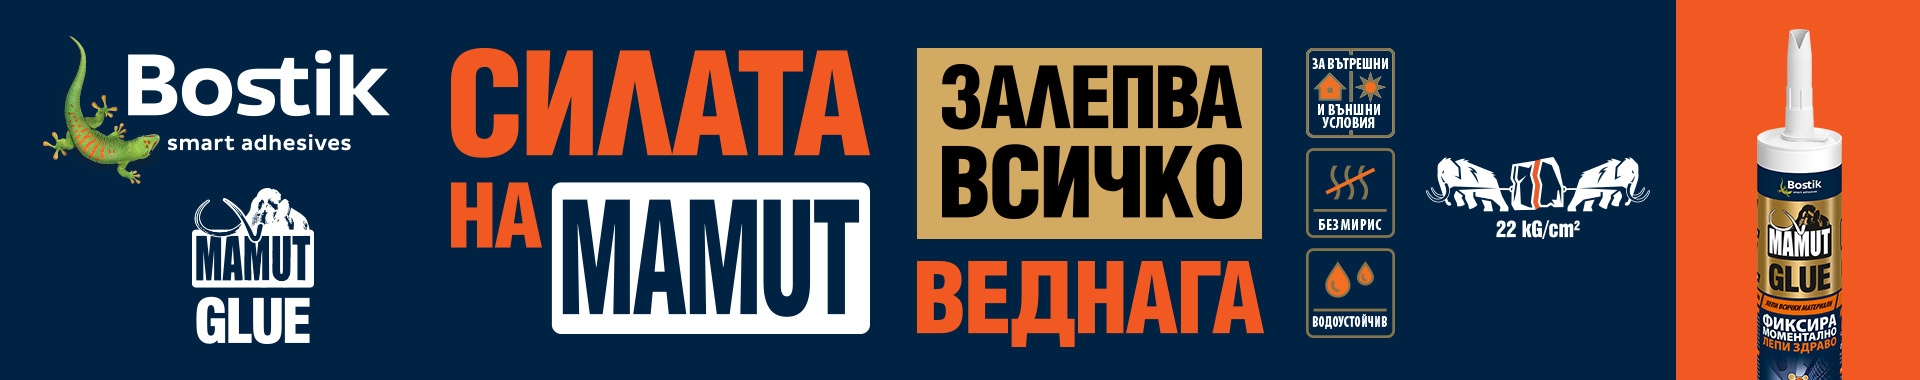 Bostik DIY Bulgaria Mamut banner image